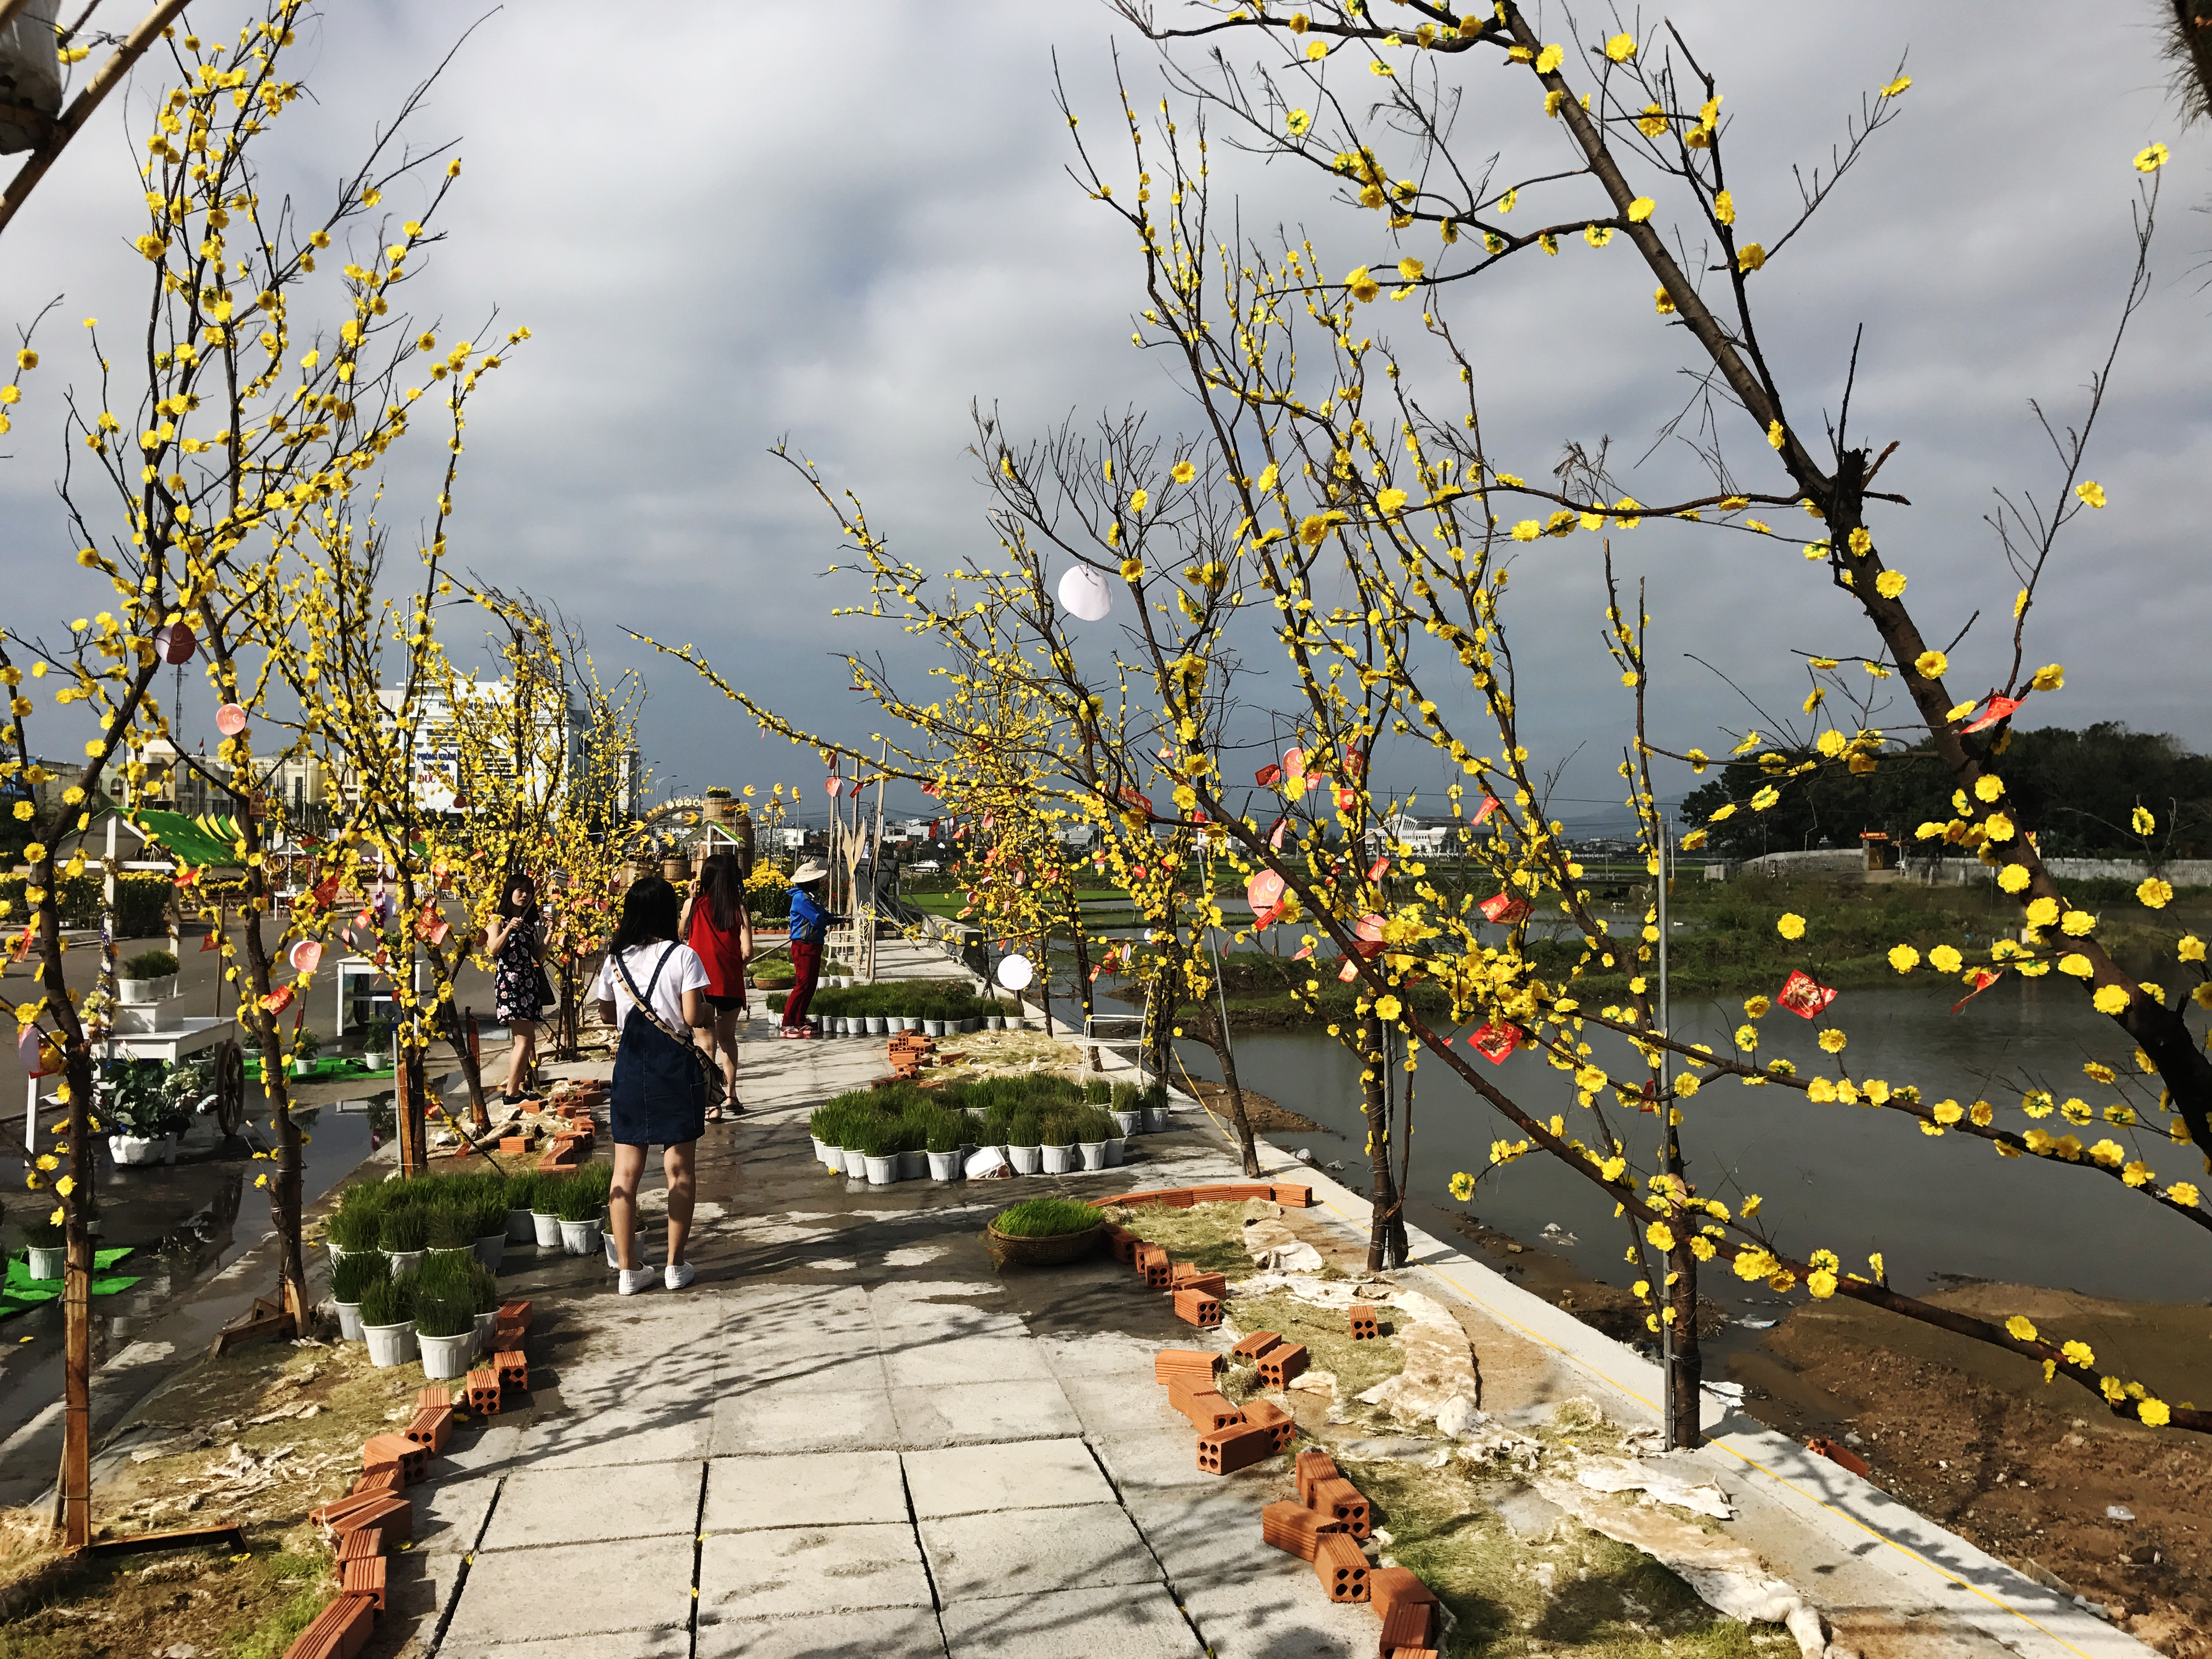 Đường hoa xuân: Với những đường hoa xuân tràn ngập màu sắc và sắp được ra mắt trong ánh đèn lung linh, bạn sẽ không muốn chờ đợi để khám phá tất cả vẻ đẹp của đường hoa. Hãy tận hưởng không khí rộn ràng và đầy sức sống của mùa xuân trên những con đường đẹp nhất Việt Nam.